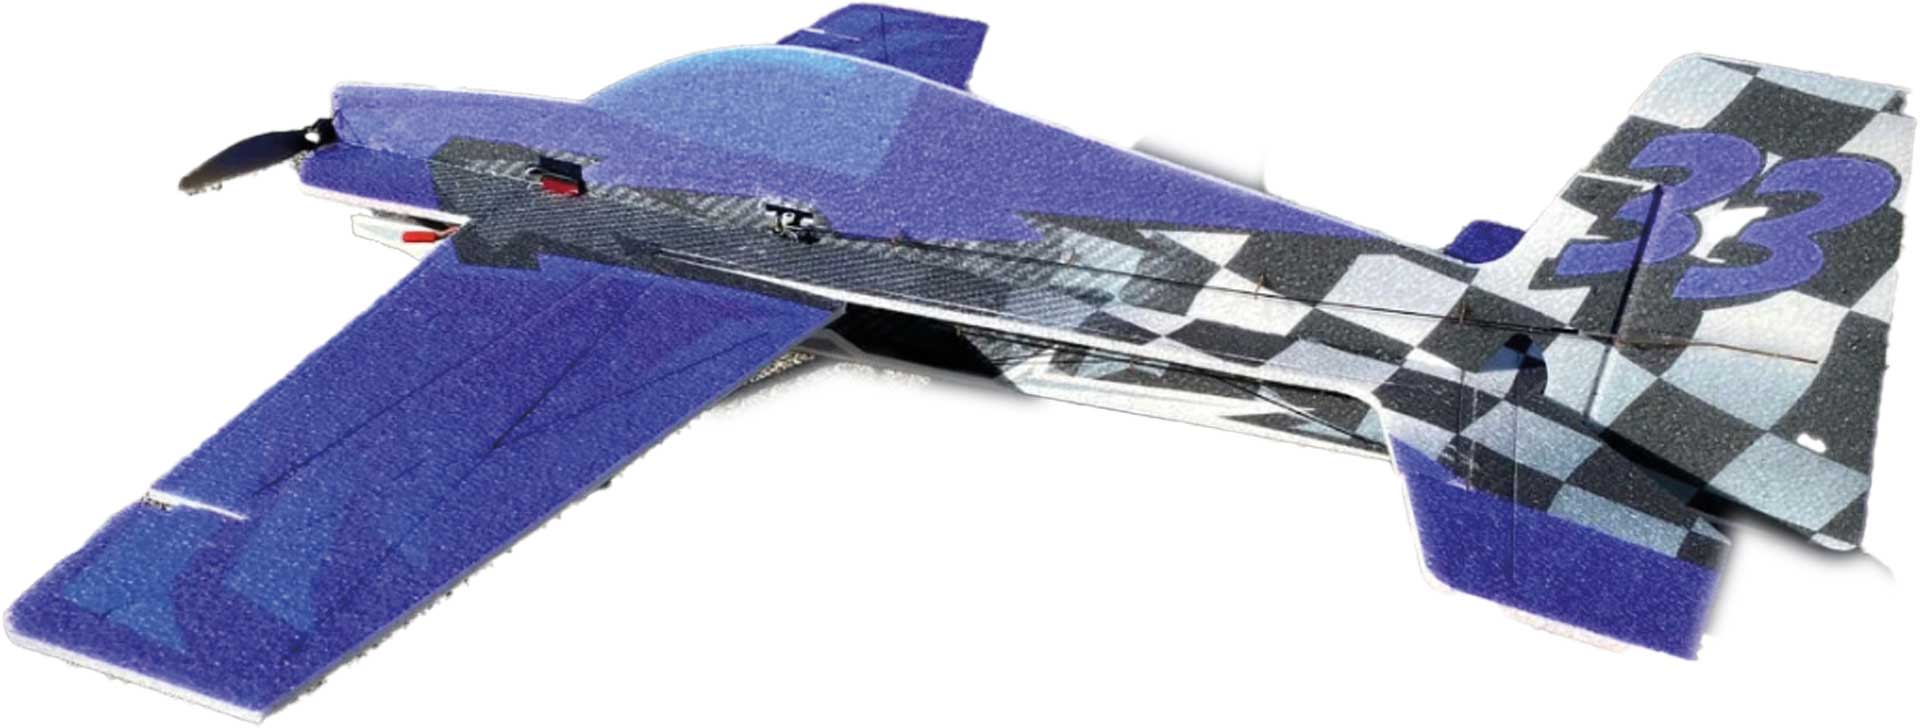 JTA Innovations Slick 33" blue/black/red EPP 3D- Aerobatic model